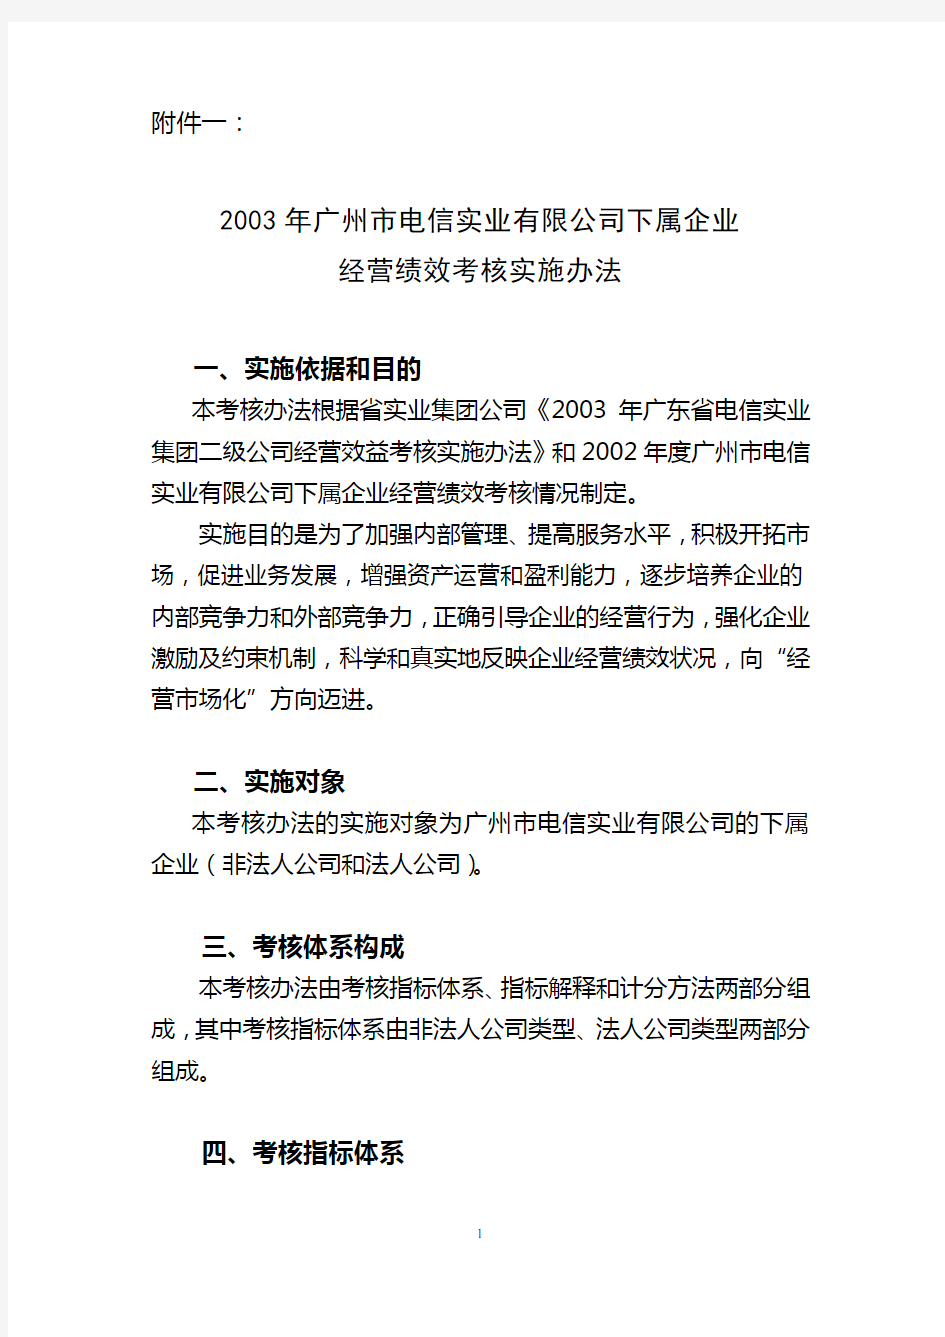 深圳爱基—广州电信—2003年广州市电信实业有限公司下属企业经营绩效考核实施办法